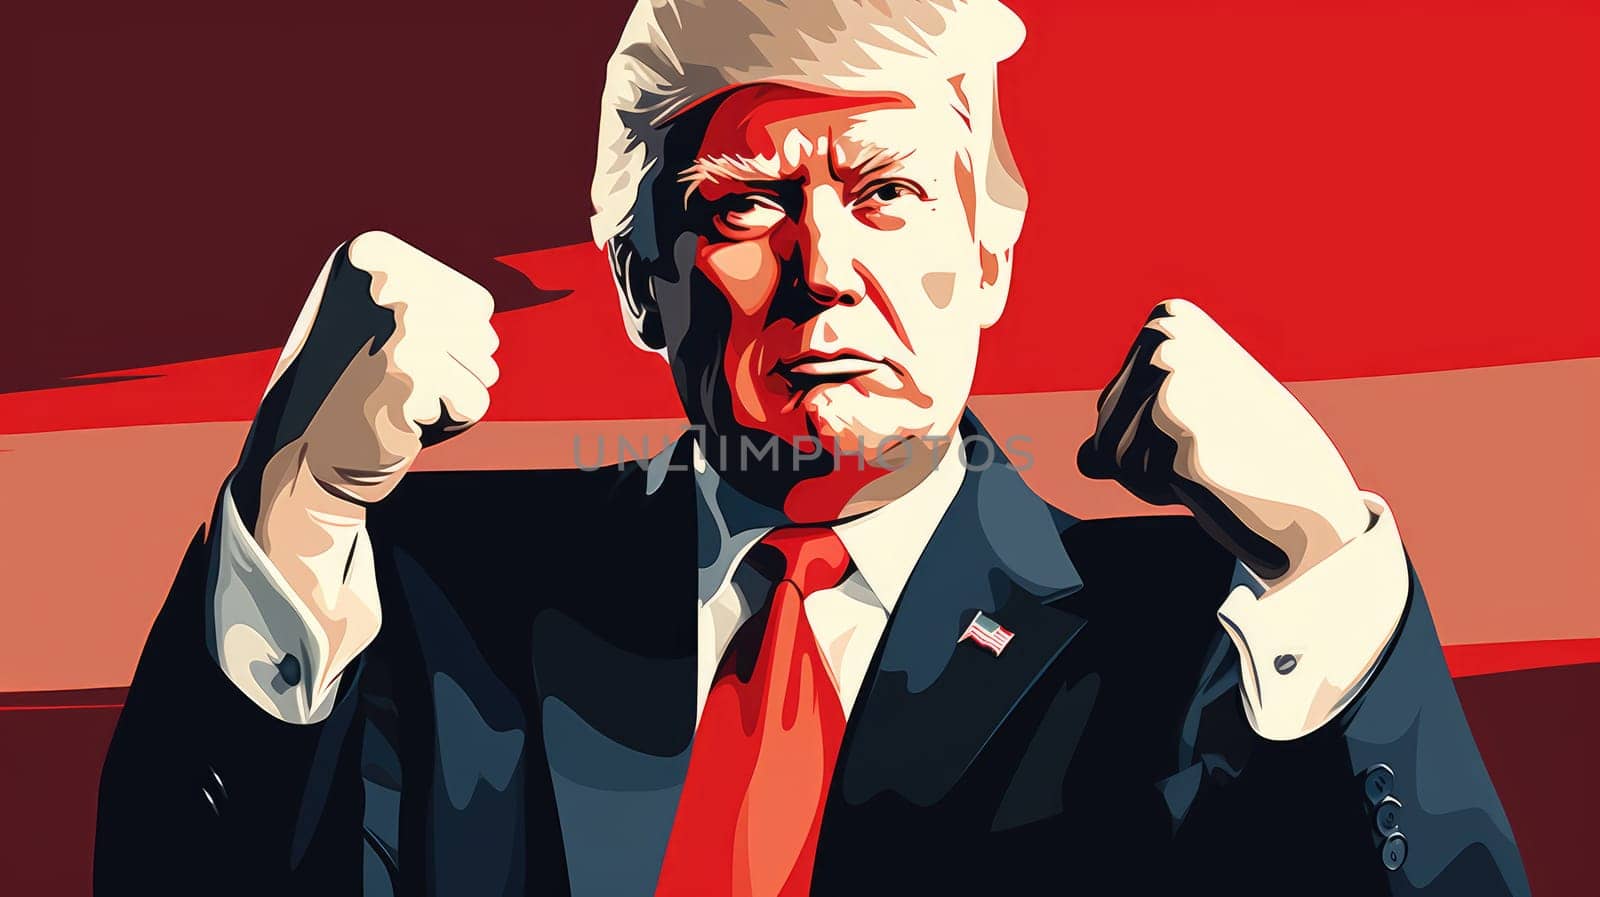 Donald Trump portrait by palinchak